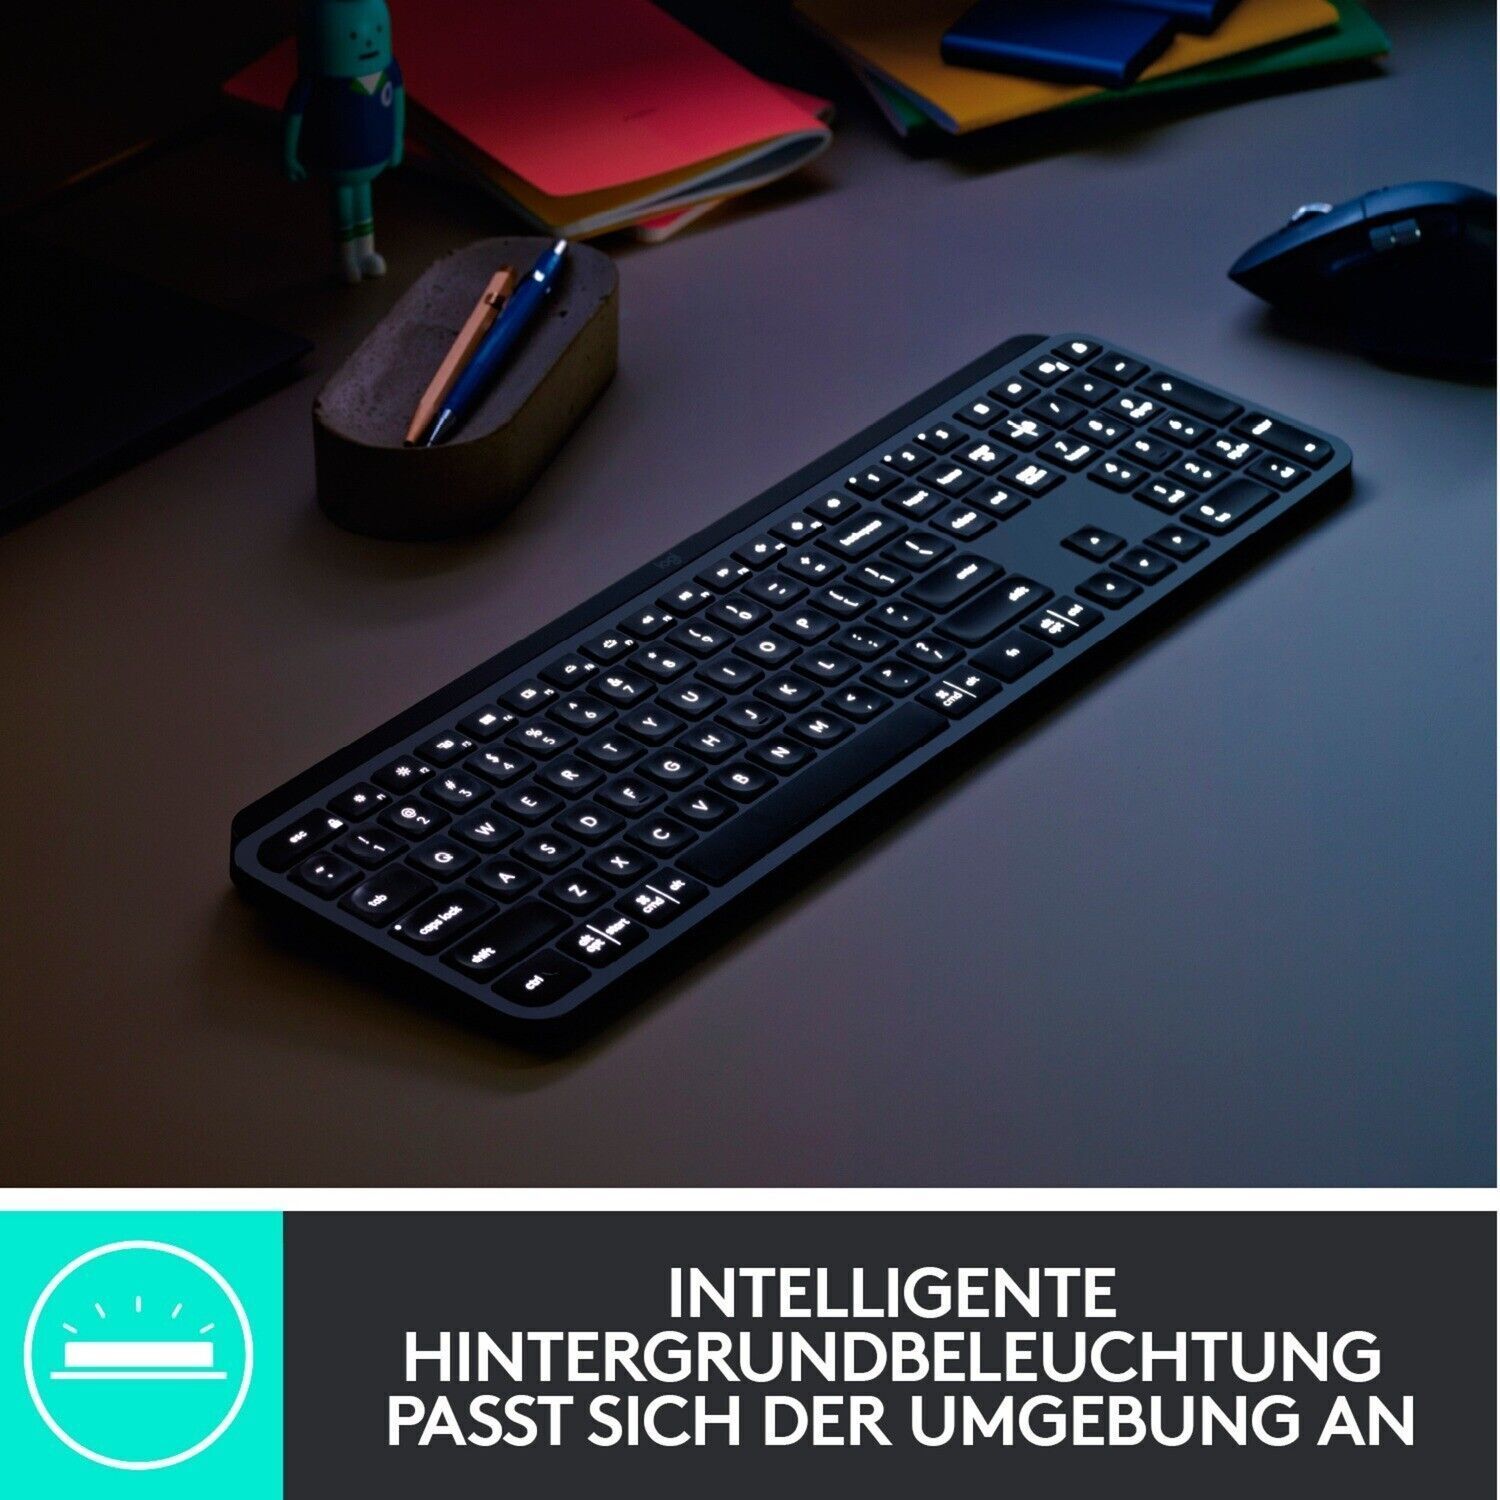 Logitech MX Keys Advanced Illuminated Wireless Keyboard QWERTZ German Layout - RLO Tech